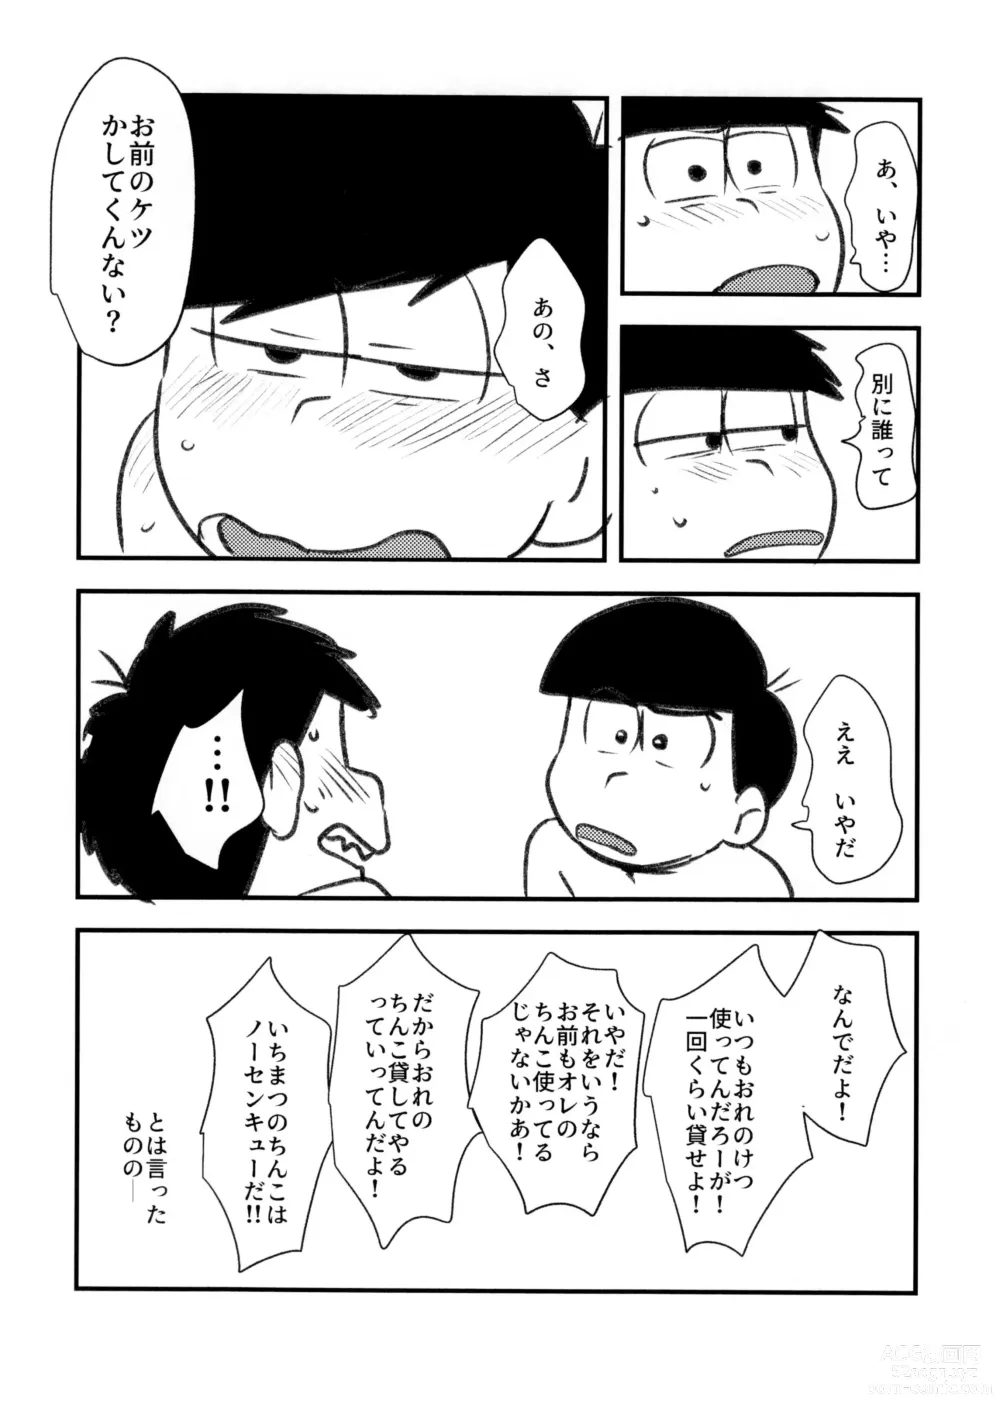 Page 8 of doujinshi Guchuguchu Nuchinuchu Mahou no Doppyun Onaho de Sotsugyou